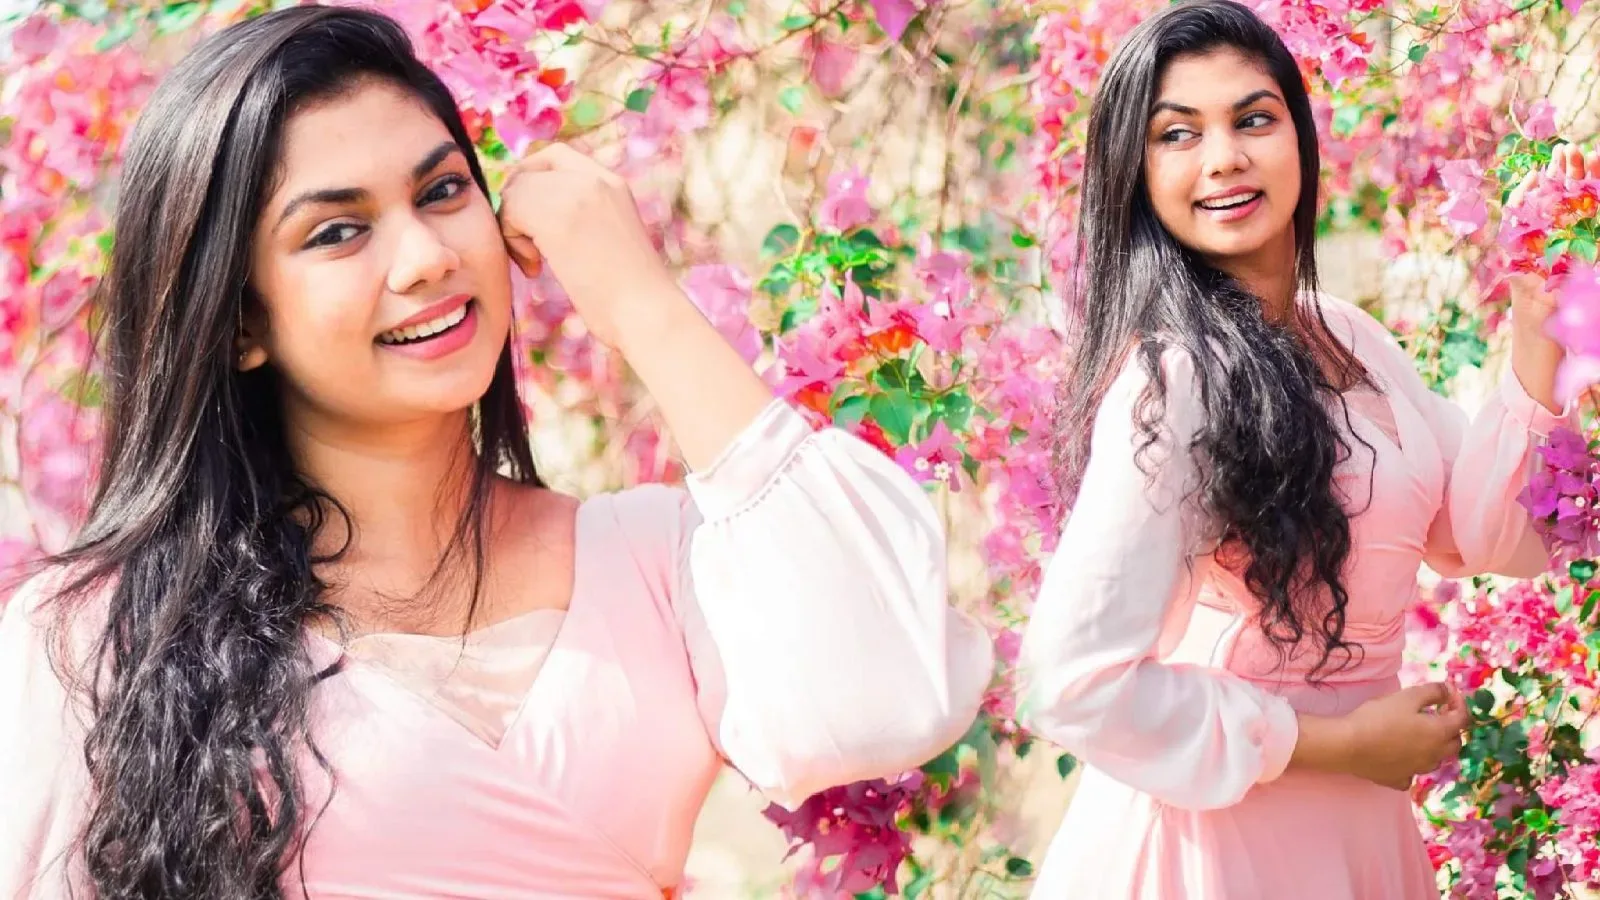 Sri Lankan Actress Damithri Subasinghe looks so cute in pink dress